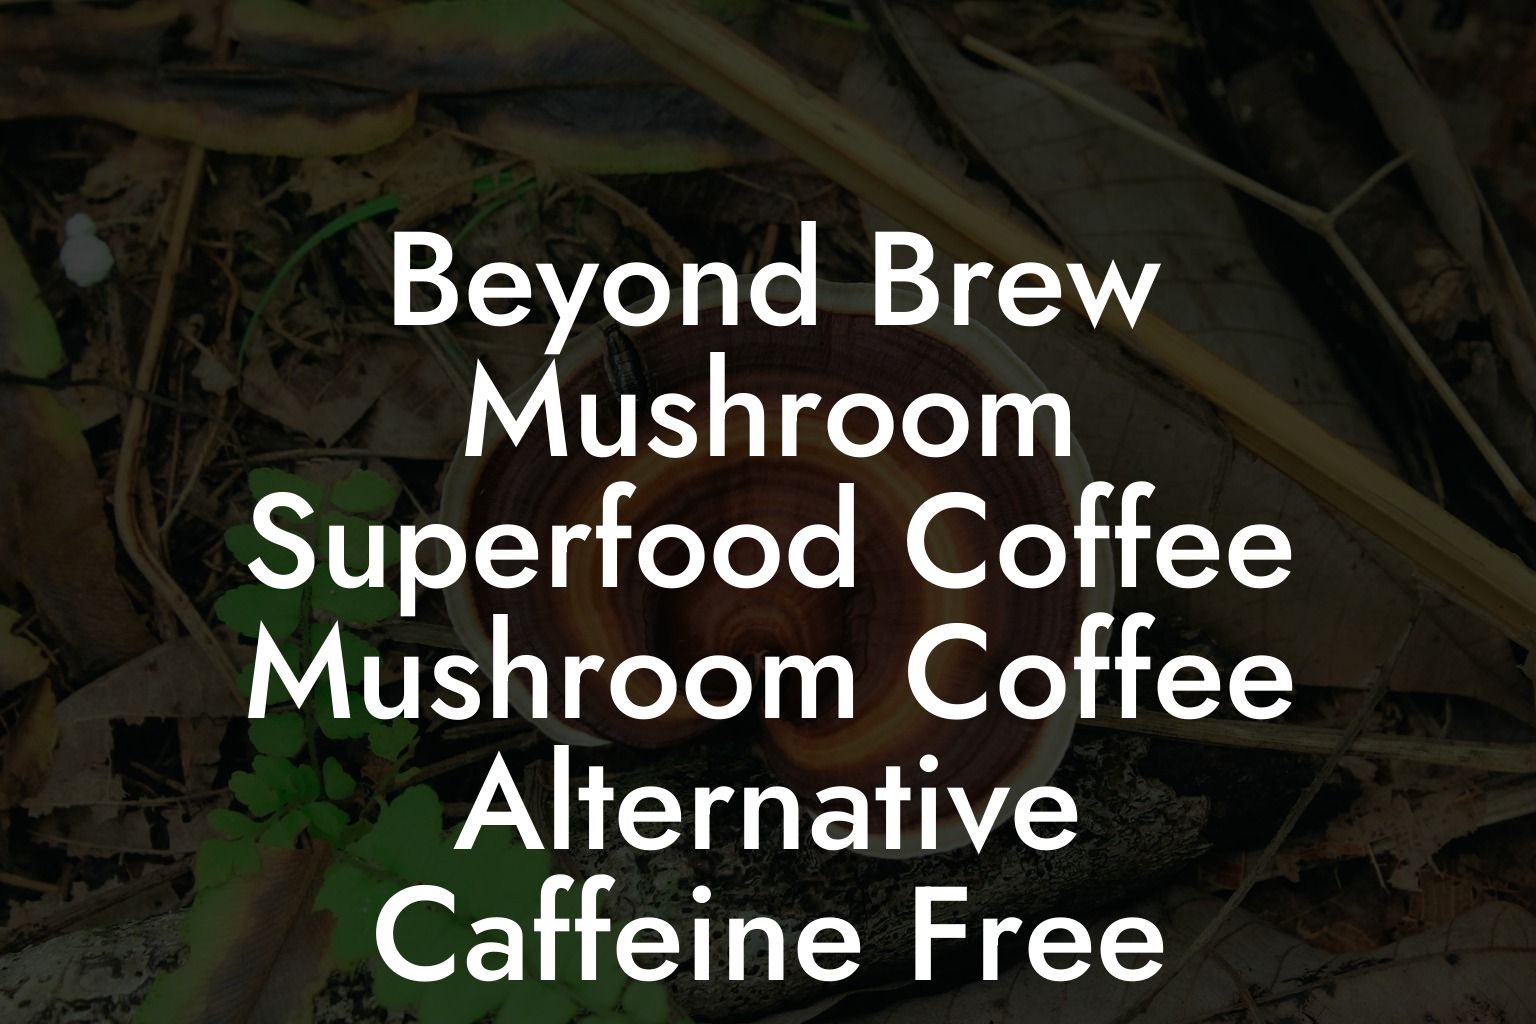 Beyond Brew Mushroom Superfood Coffee Mushroom Coffee Alternative Caffeine Free